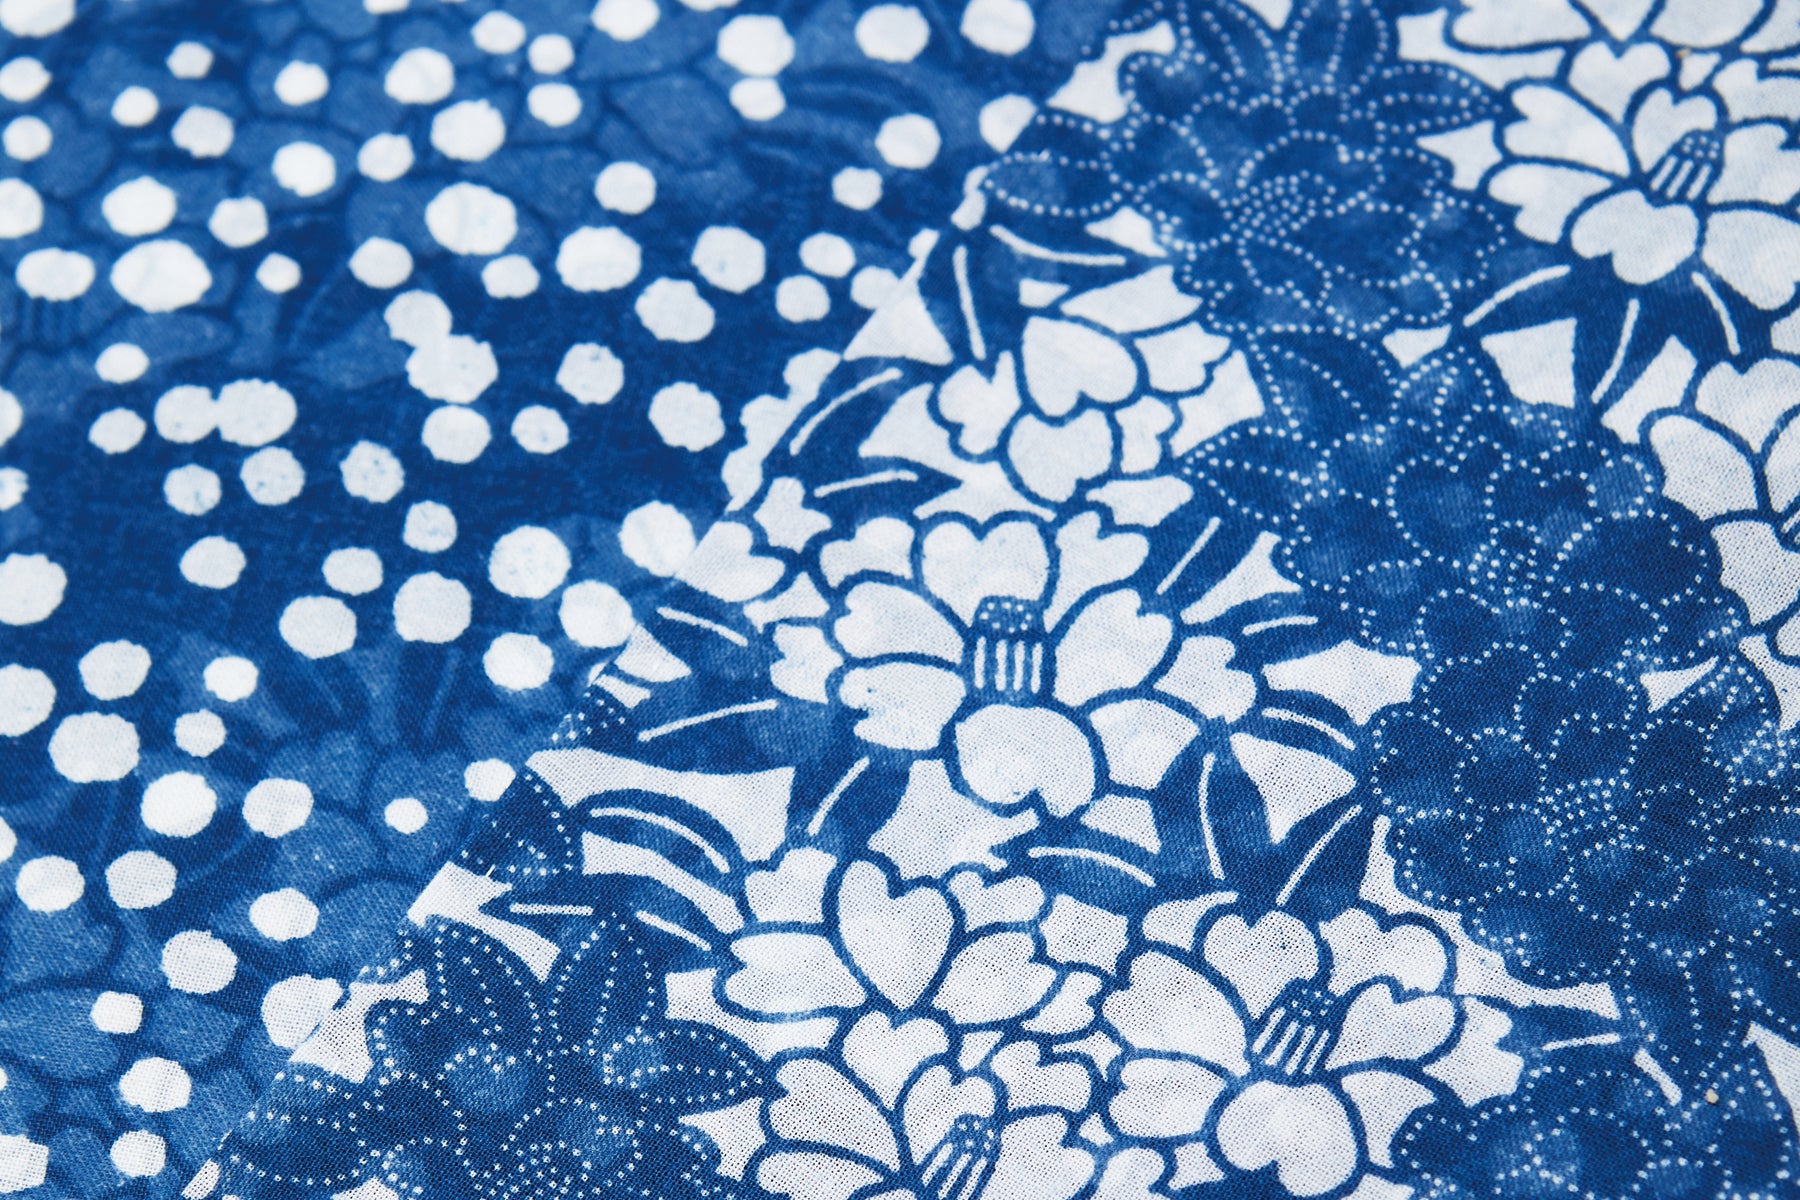 松原伸生の長板中形「藍冴える型模様の天晴れな美」《紫綬褒章受章記念展》| 和織物語 – 銀座もとじオンラインショップ